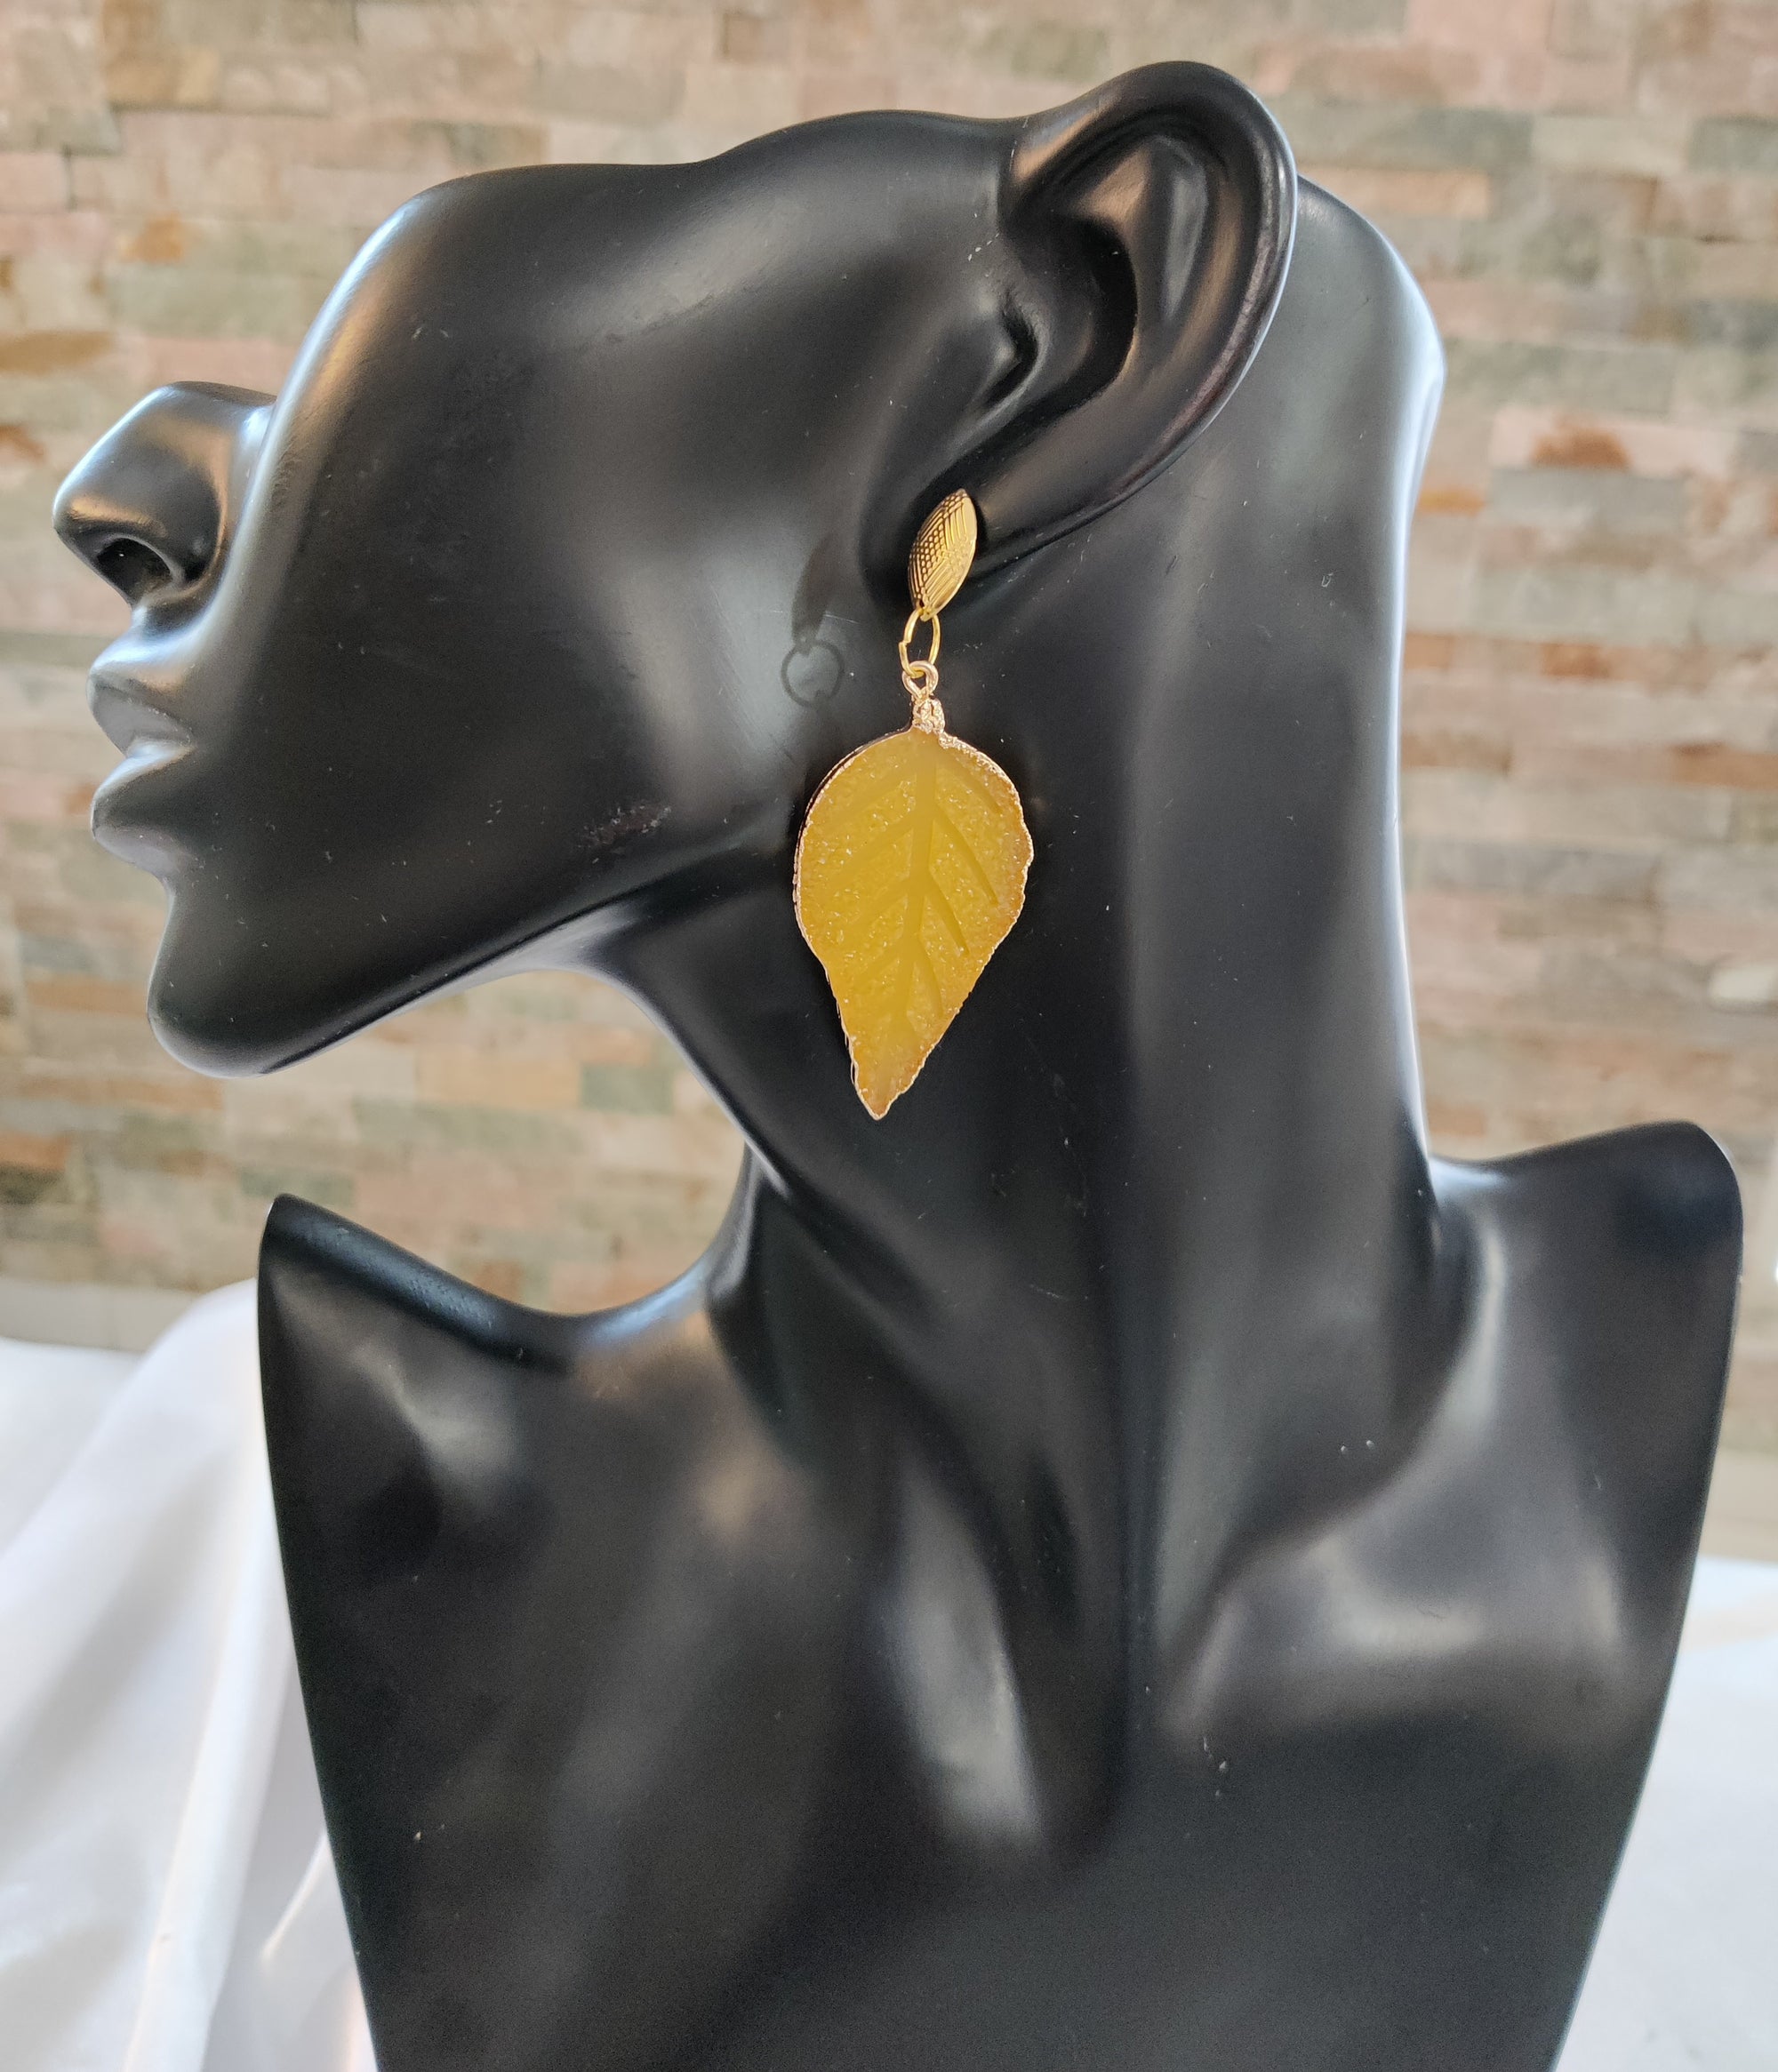 yellow leaf earrings